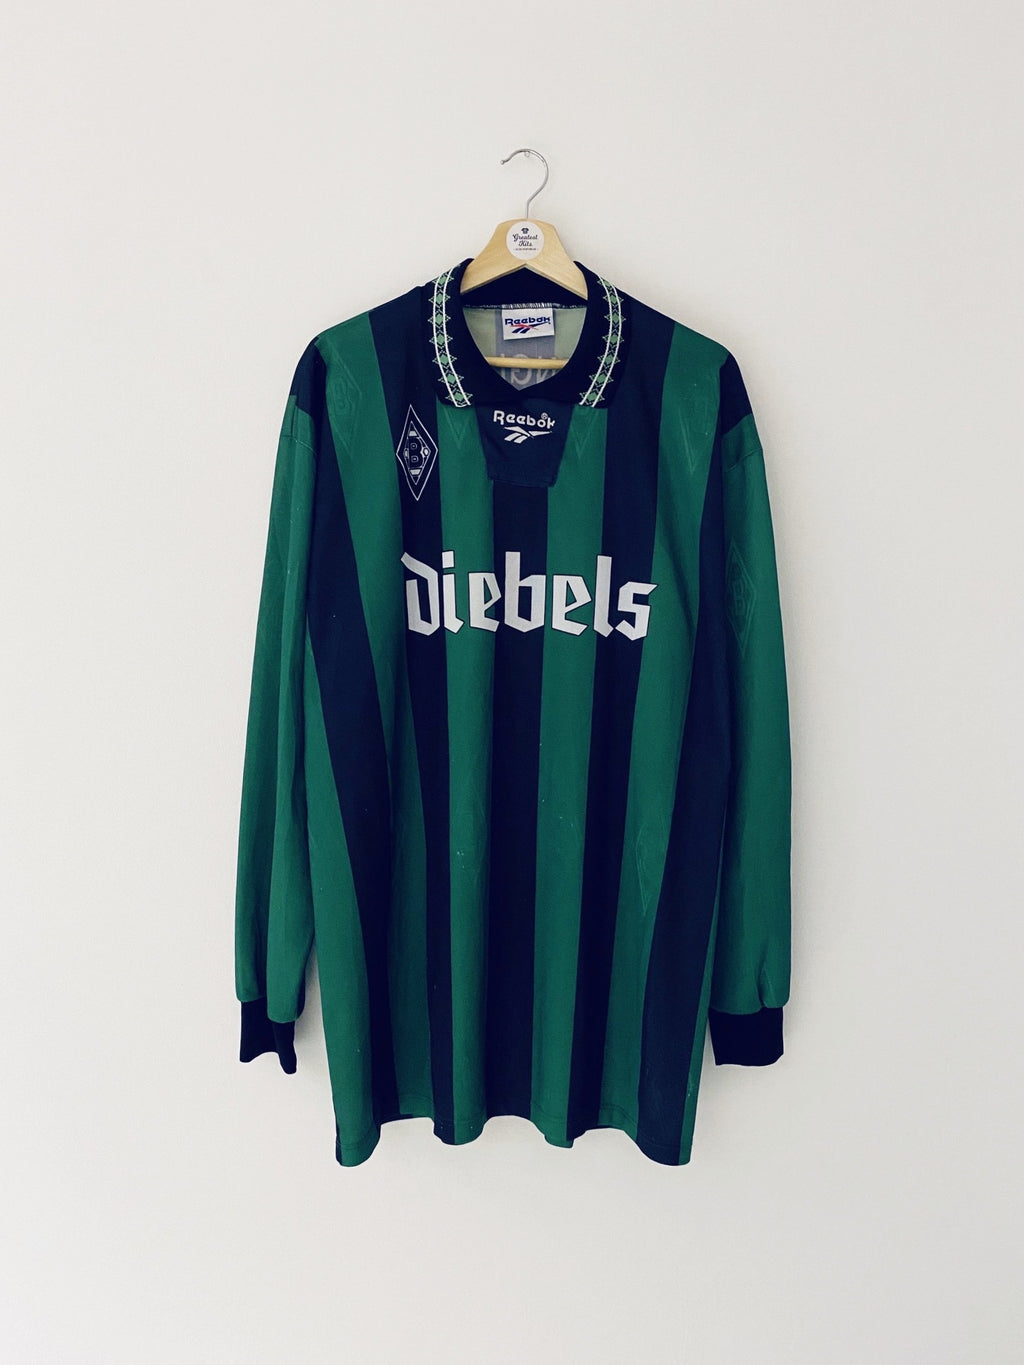 1995/96 Camiseta de visitante del Borussia Monchengladbach L/S (XXL) 7.5/10